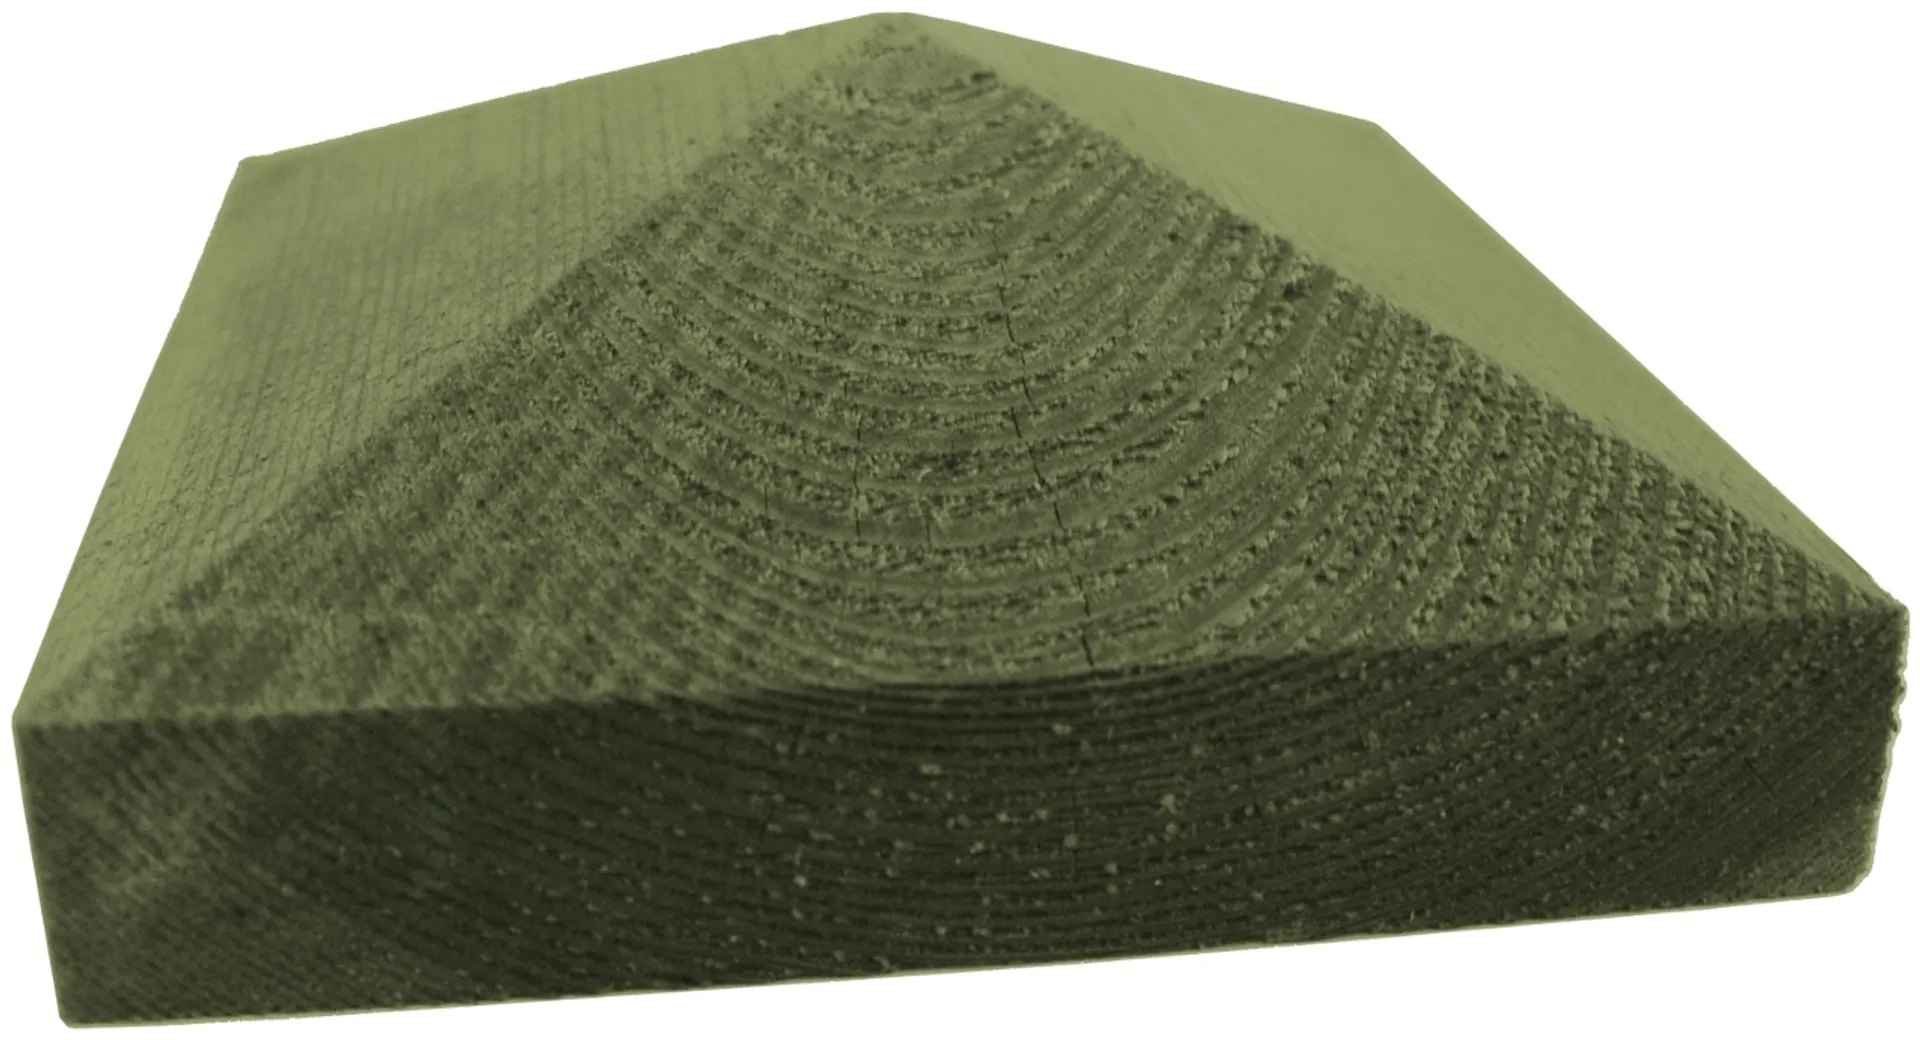 Tammisto tolpanhattu K3870 Pyramidi 70mm tolpalle, painekyllästetty vihreä